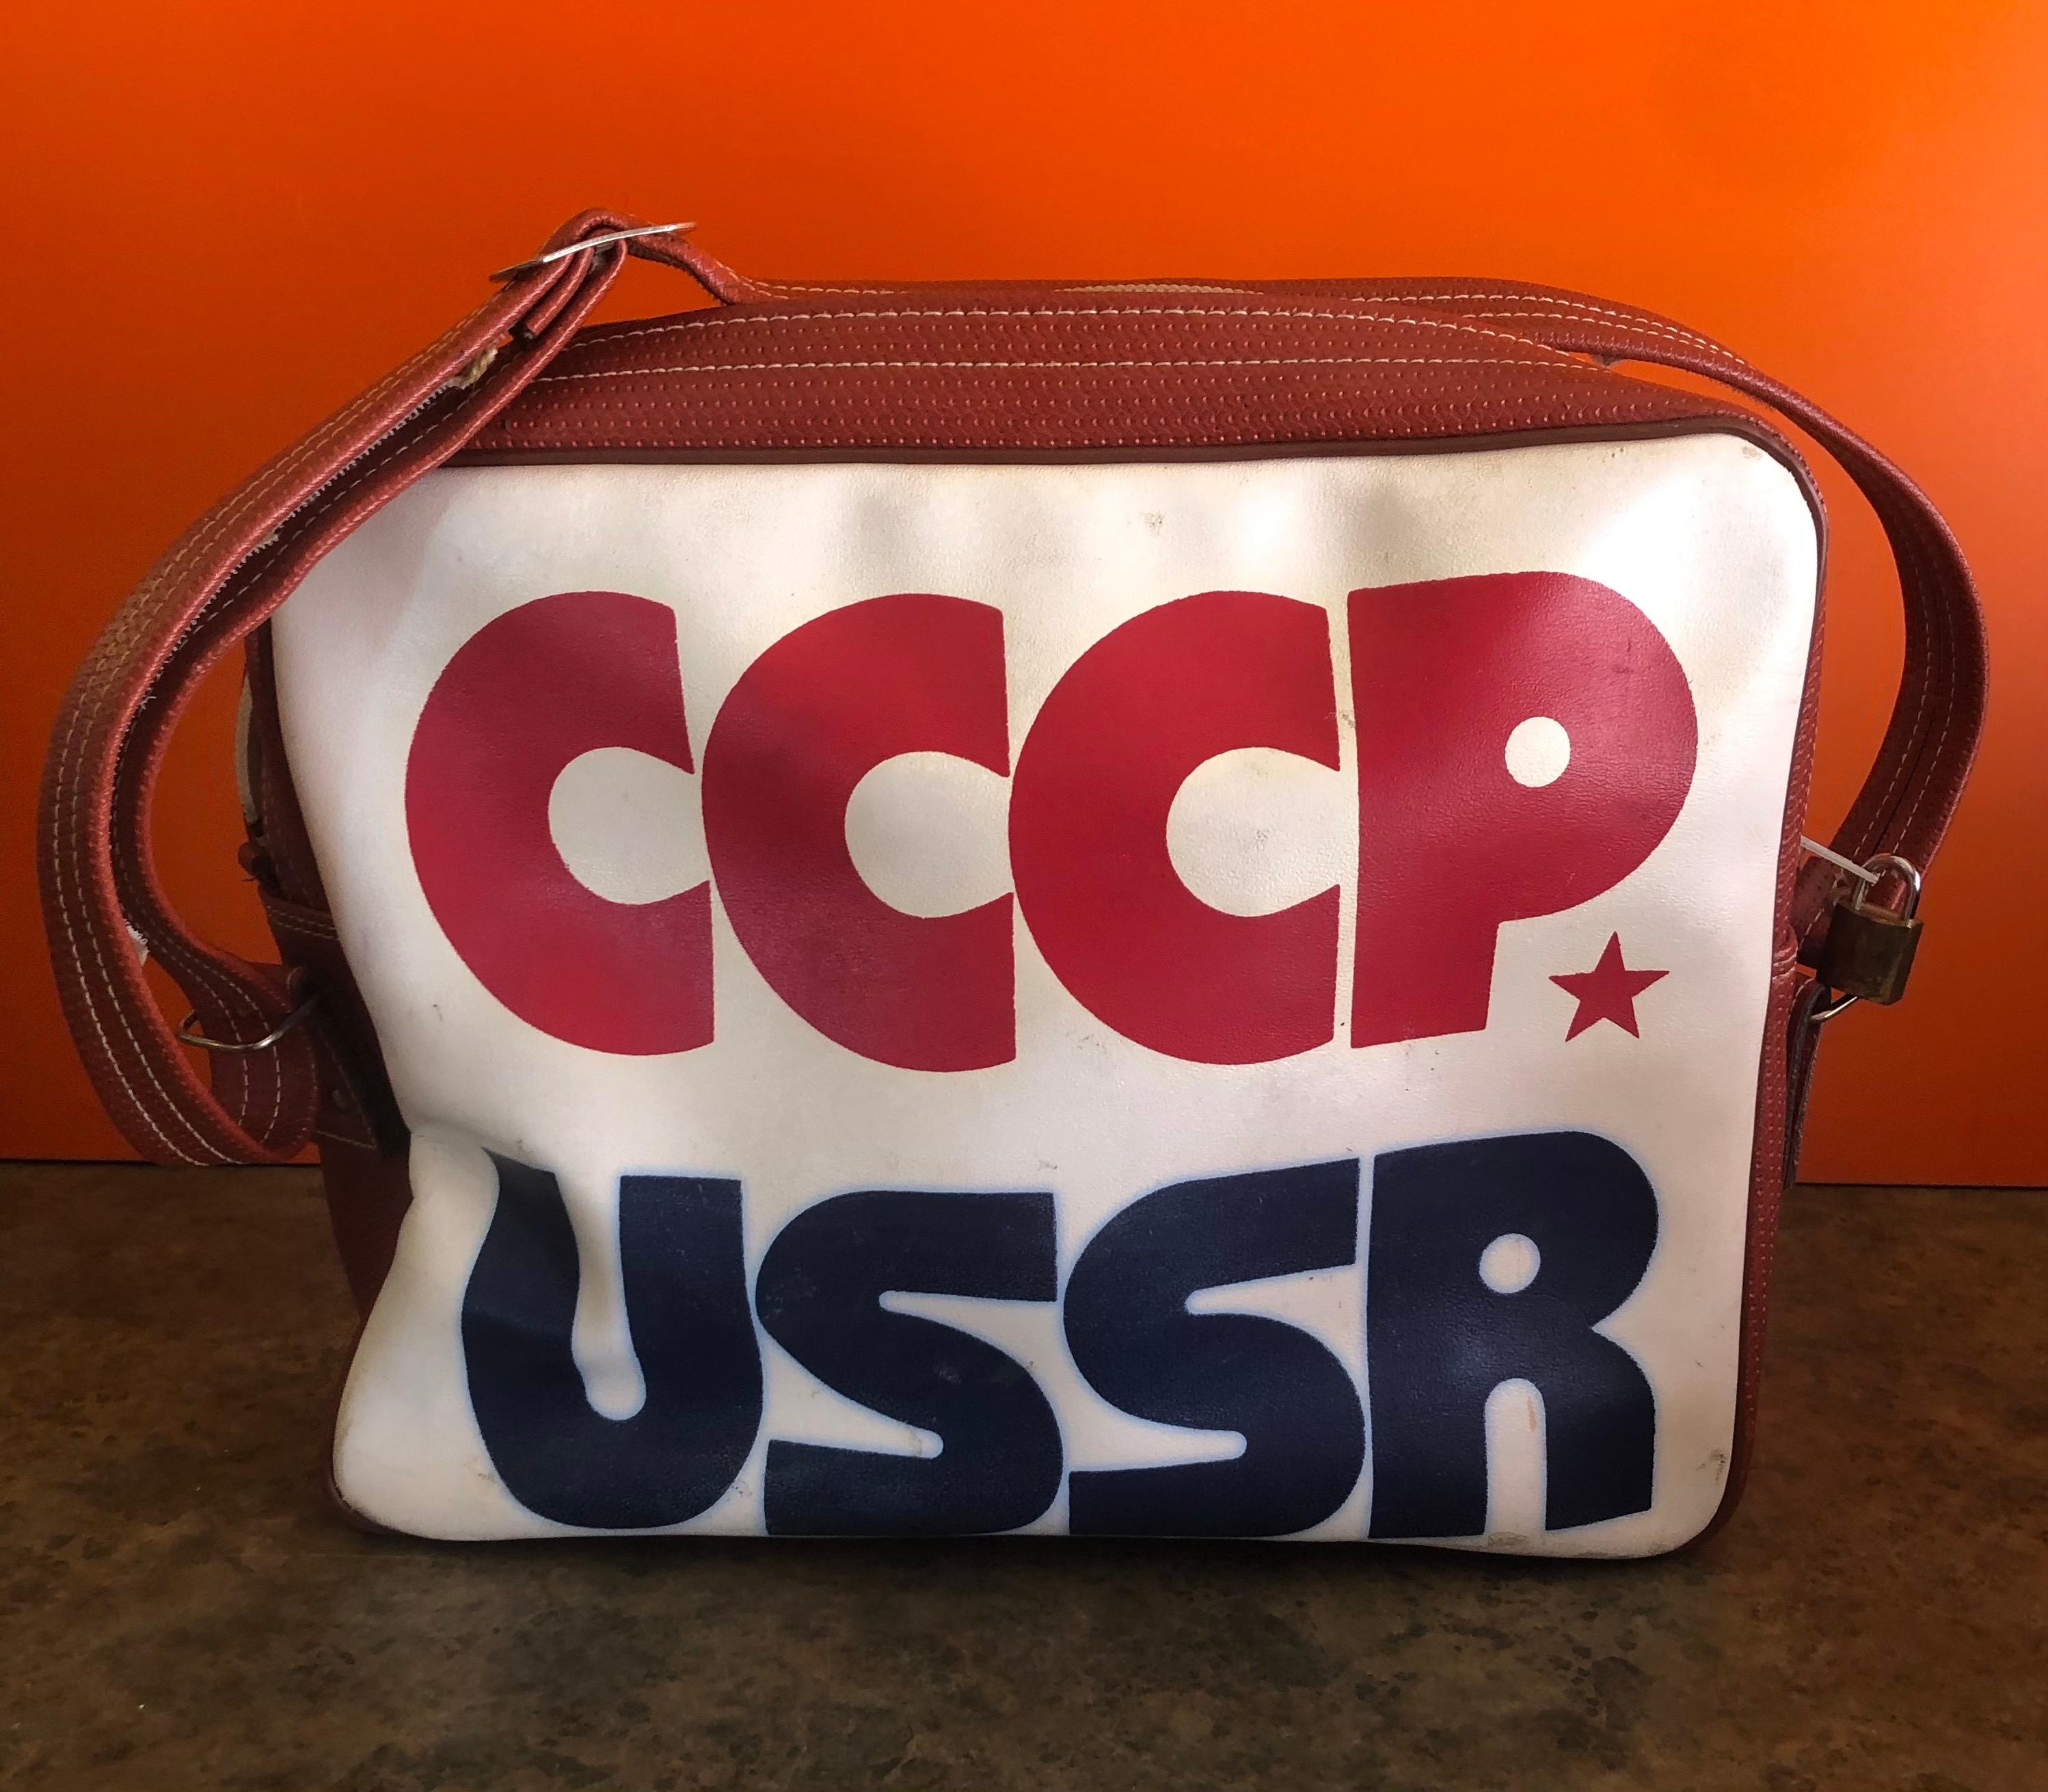 Authentique sac de sport CCCP USSR Olympic Naugahyde, circa 1980

Le sac est authentique et l'étiquette russe originale est intacte. Cette pièce, que l'on pense avoir été conçue par Adidas pour les jeux de 1984 à Sarajevo, en Yougoslavie, est